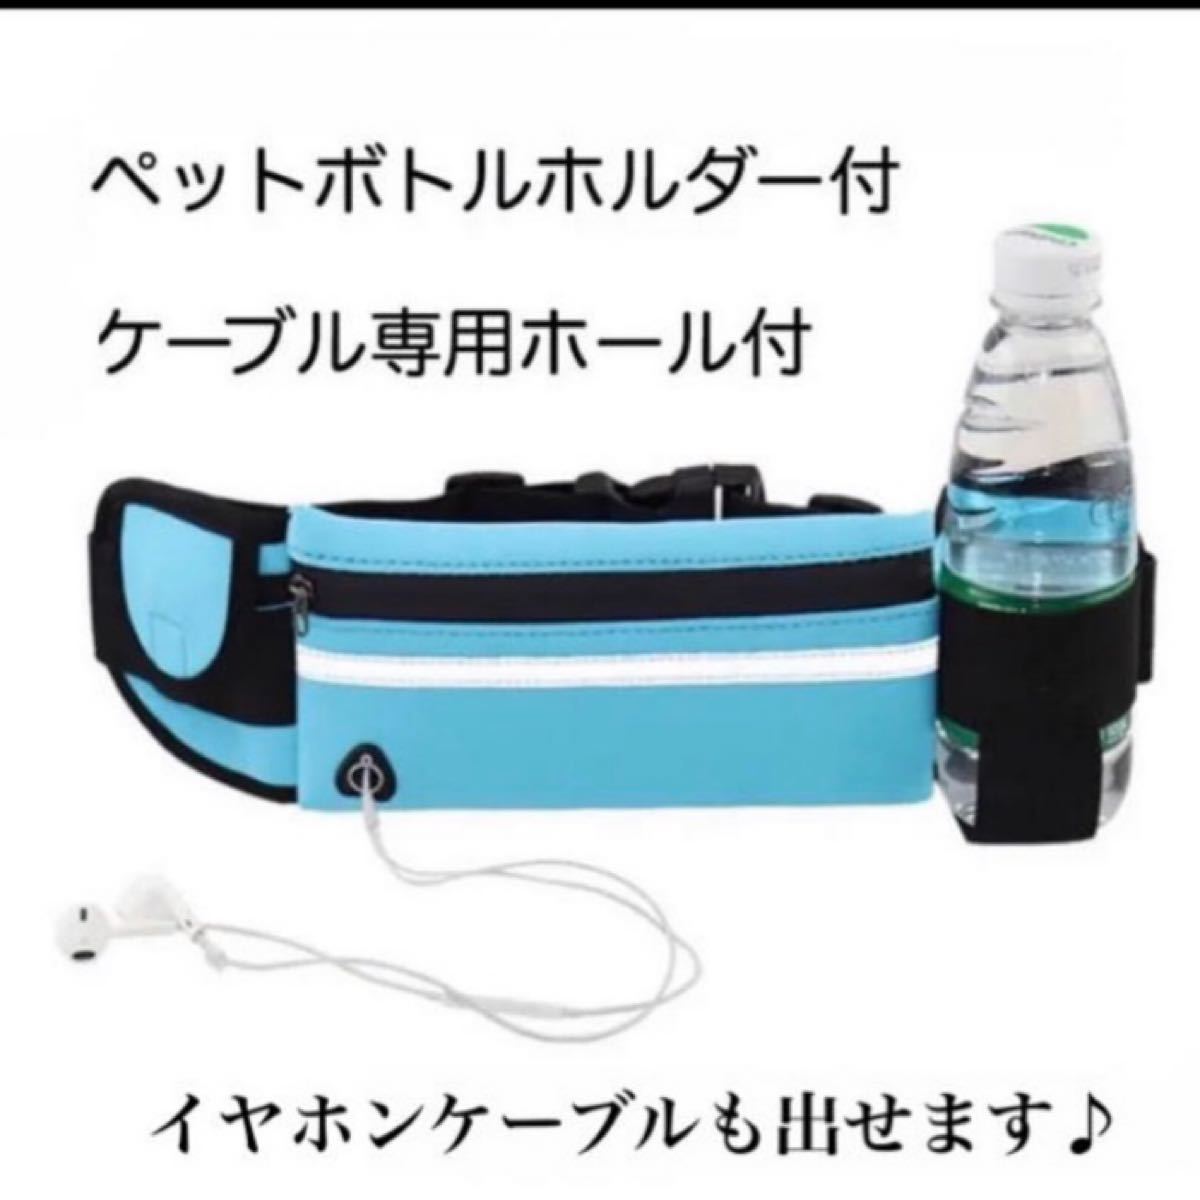 ウエストポーチ ウエストバッグ  スポーツ iPod ランニング ボトルホルダー 水色 防水 多機能 ブルー 新品 男女兼用